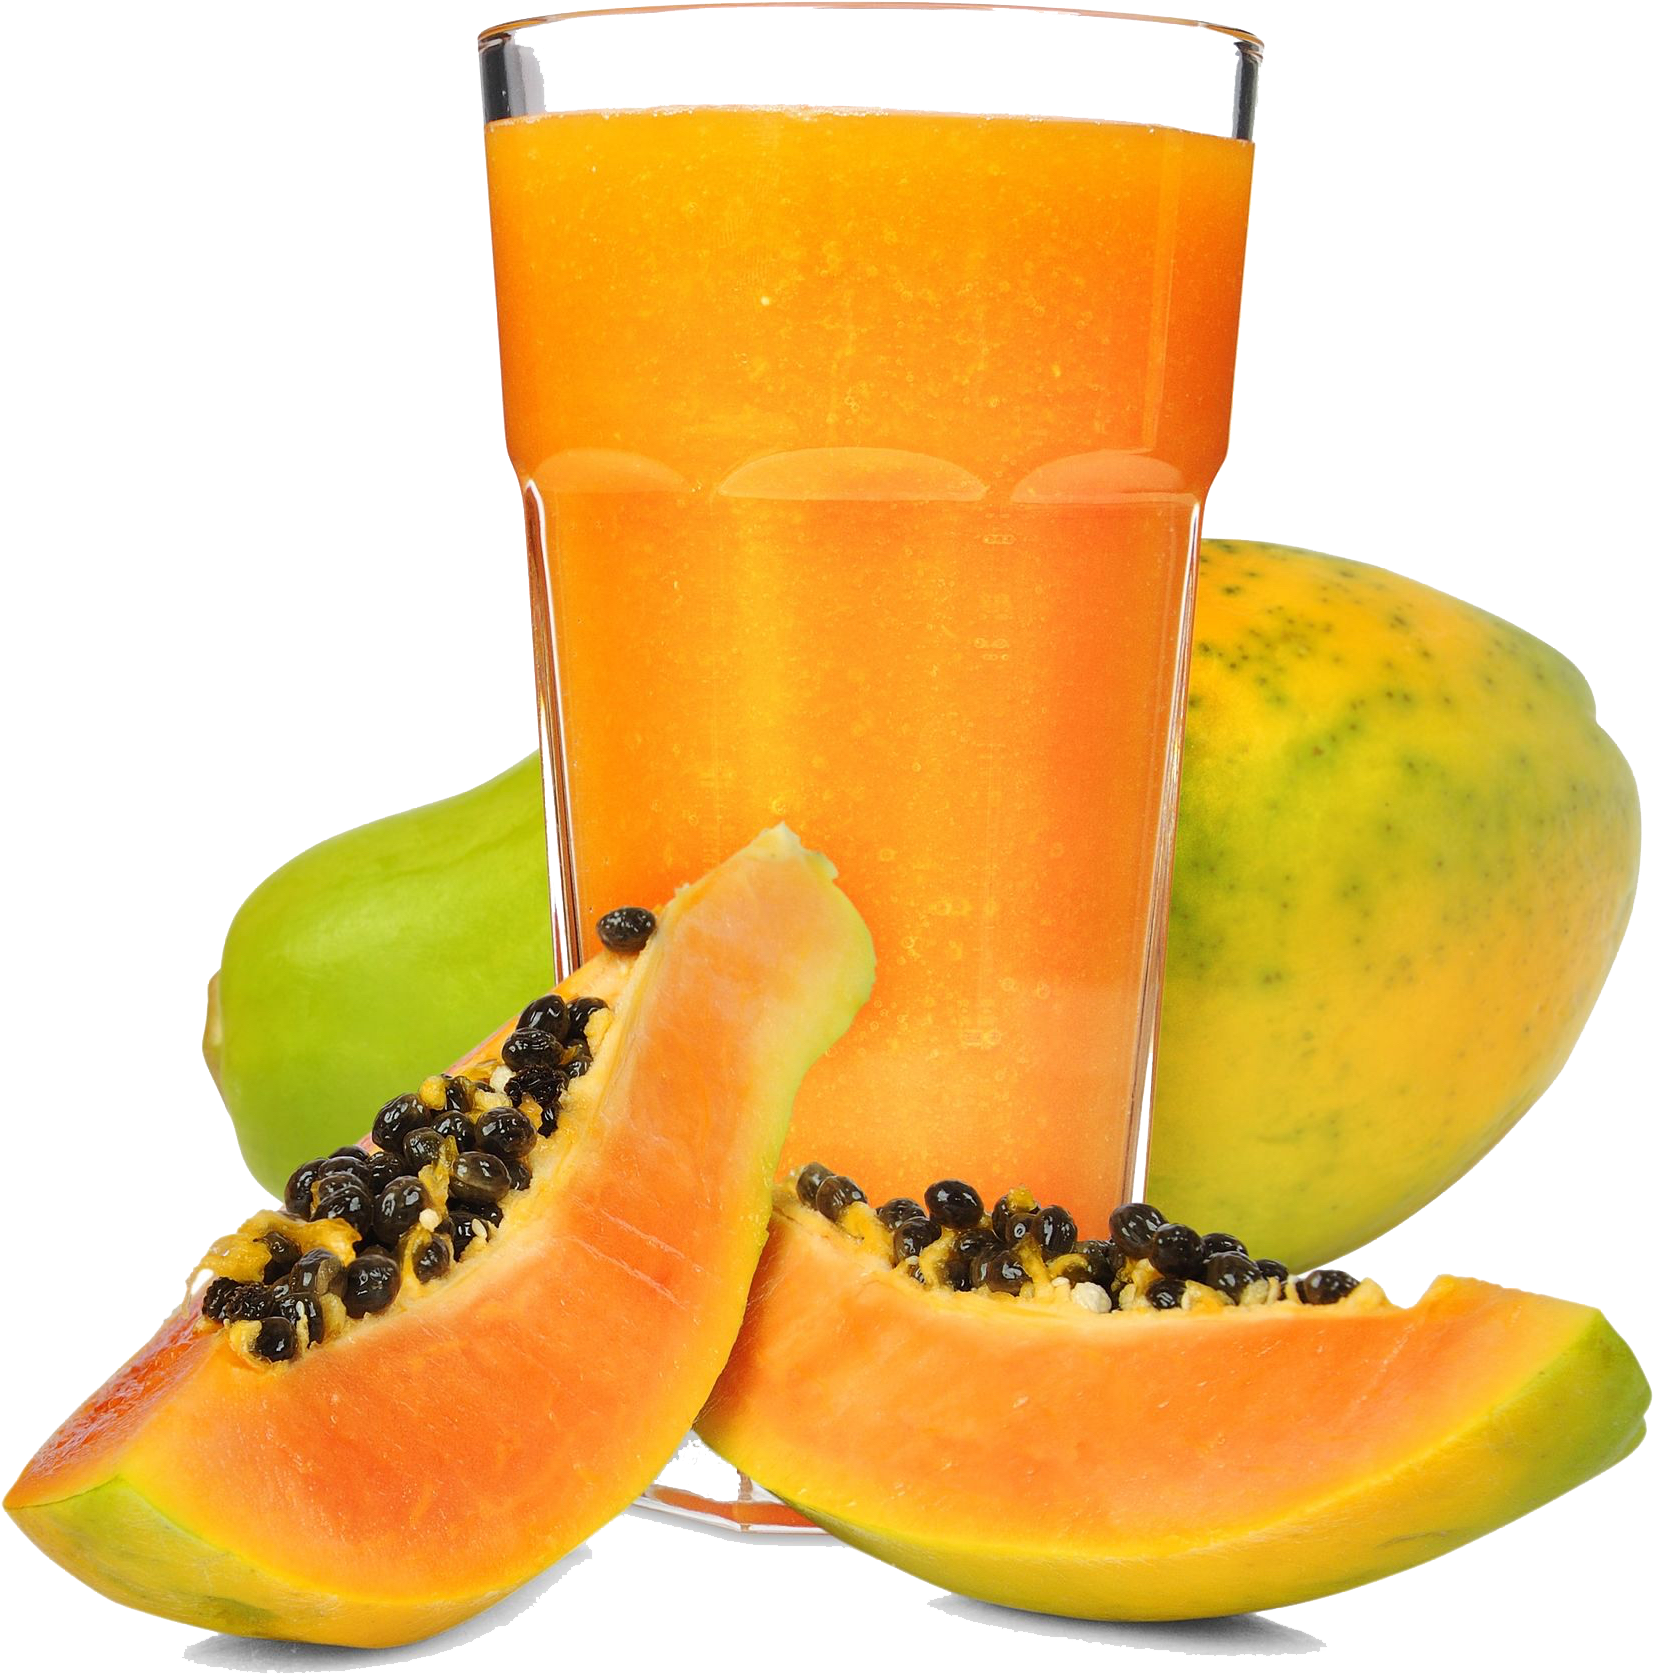 Orange Juice Smoothie Papaya Mango - 10 Day Green Smoothie Cleanse: Clean Eating Recipes (1947x2155)